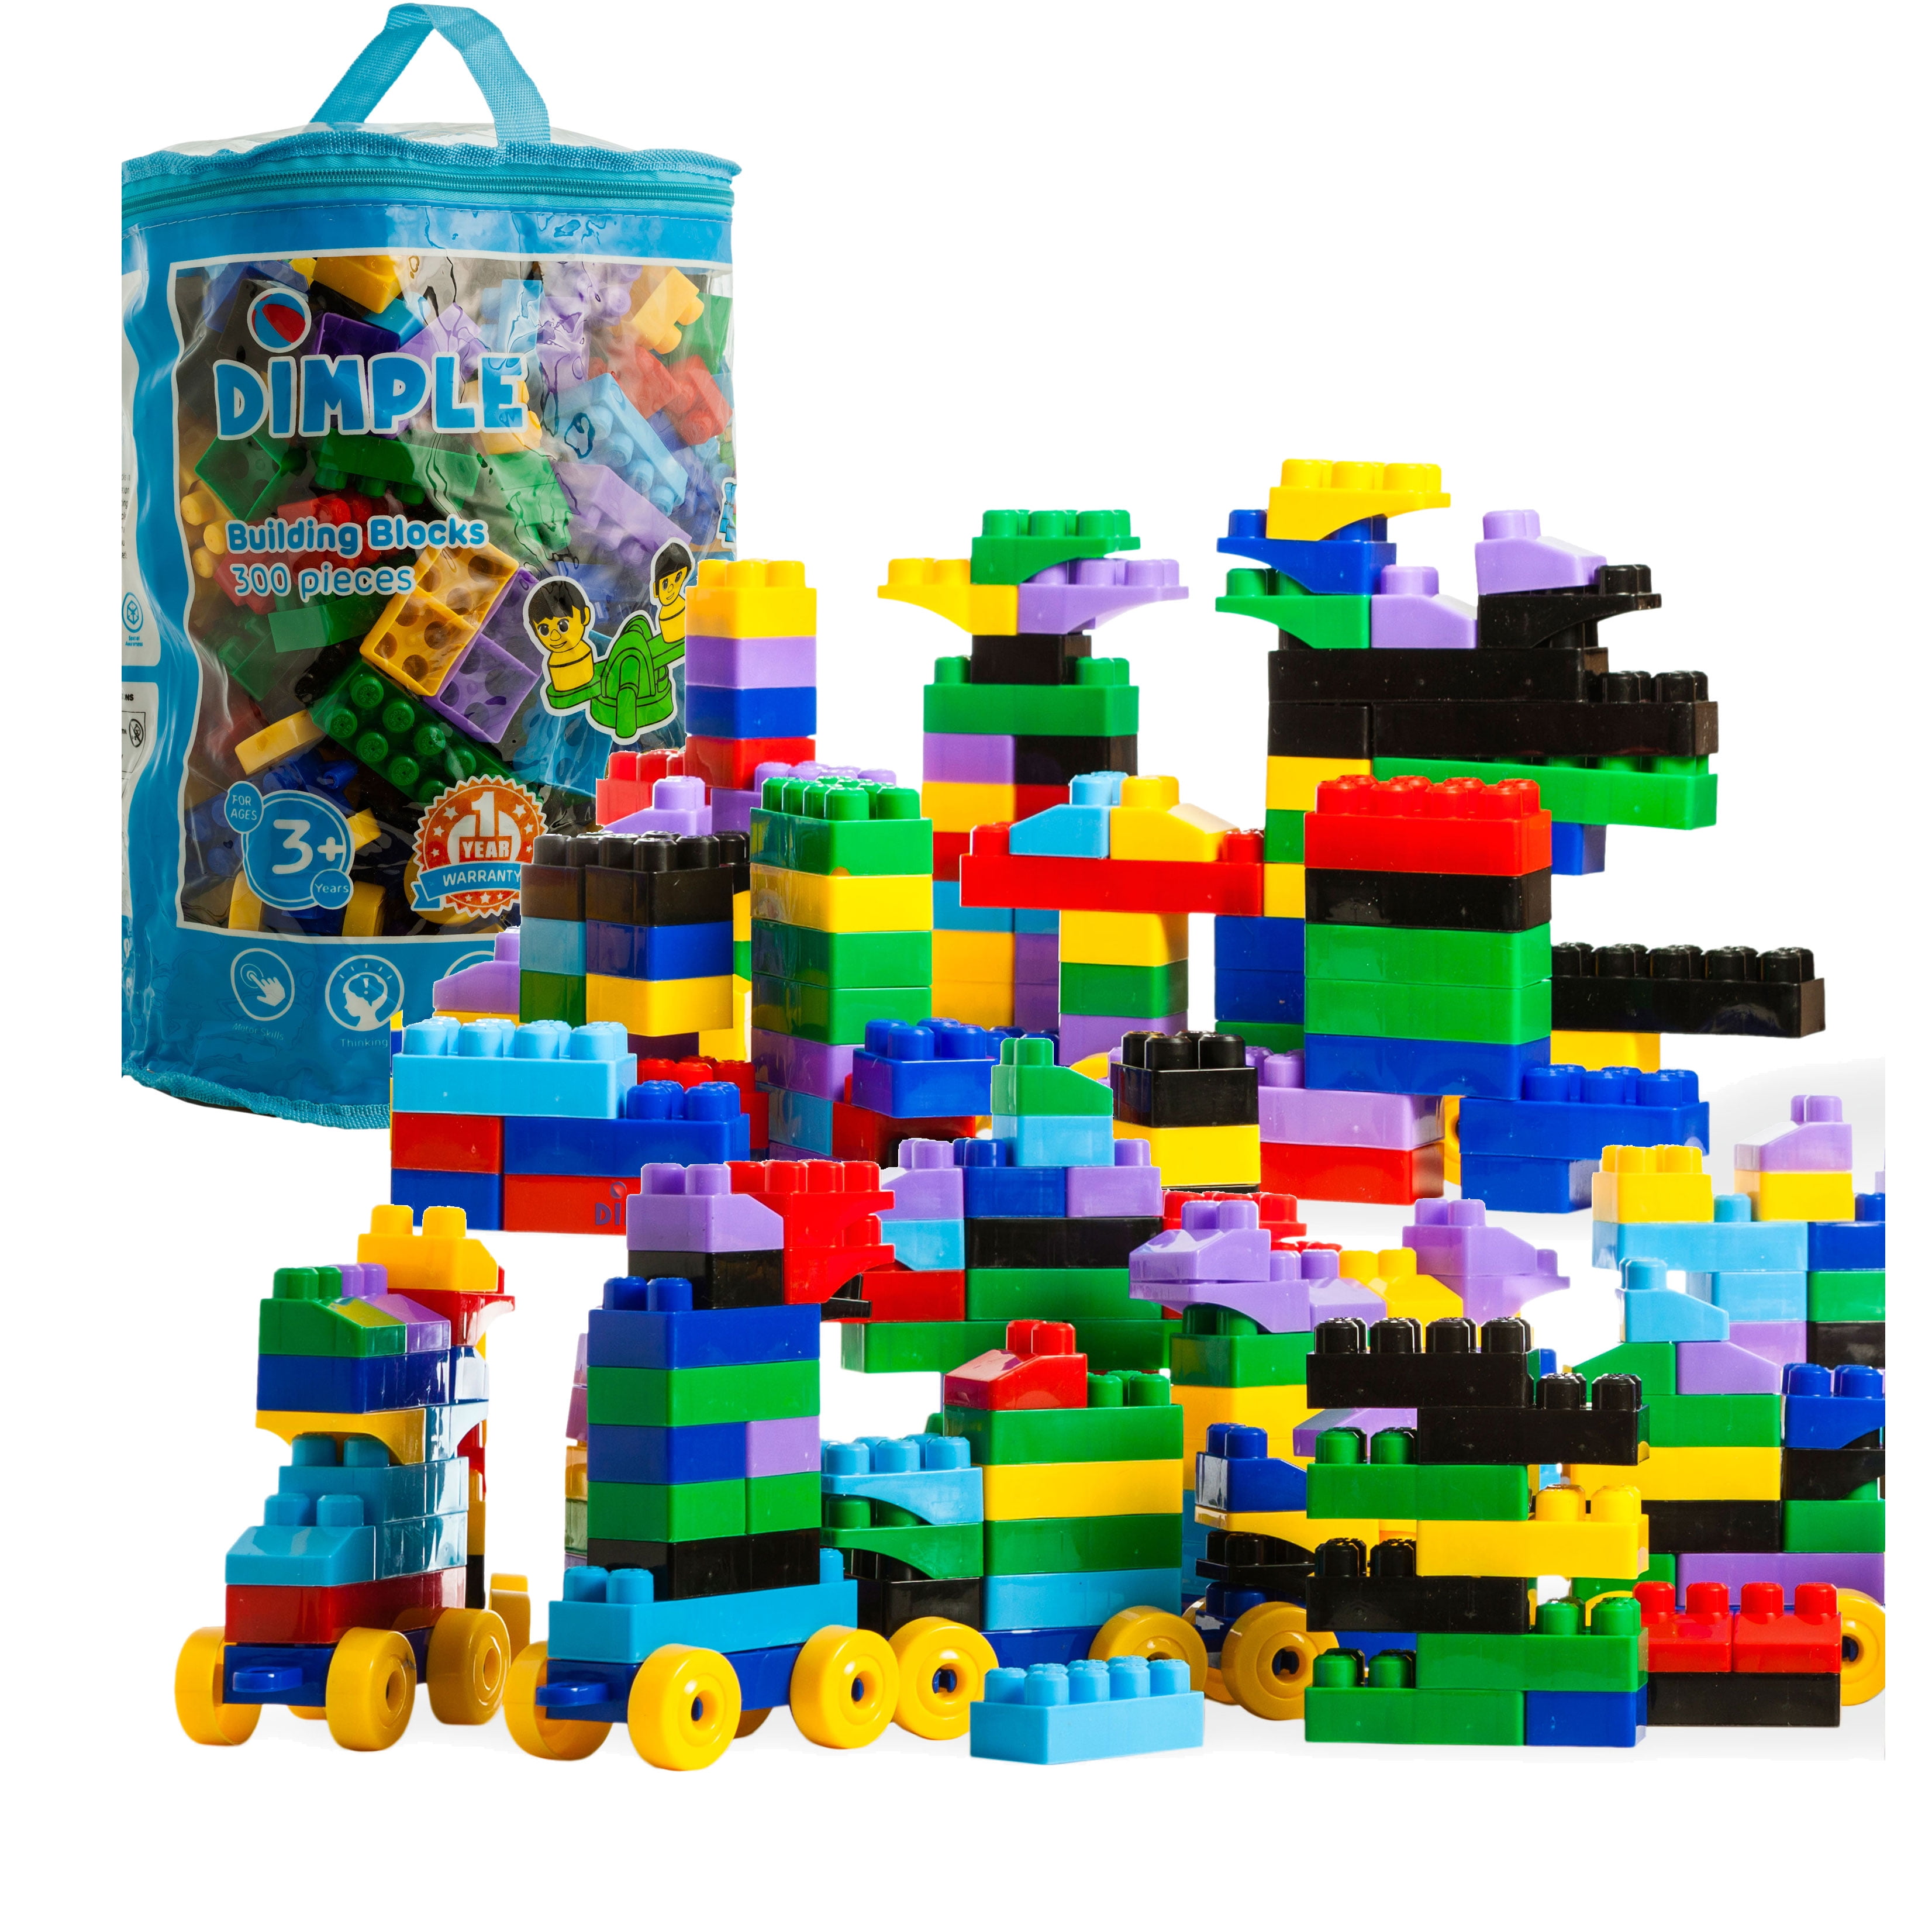 Lego 250/2000 Bulk Toys BRICKS BLOCKS LOT Mixed Sizes Basic Building Pieces Mix 